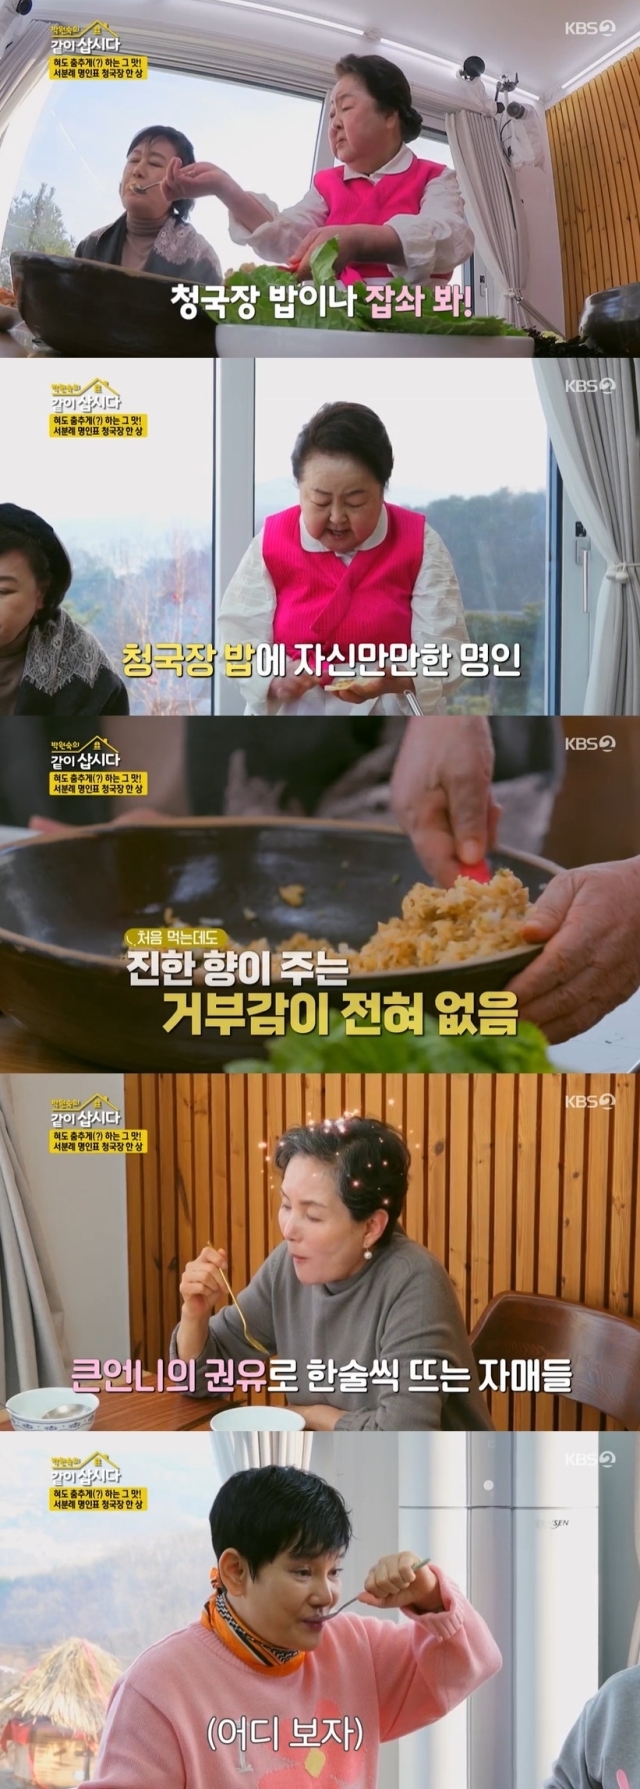 KBS 2TV '박원숙의 같이 삽시다' 방송 화면